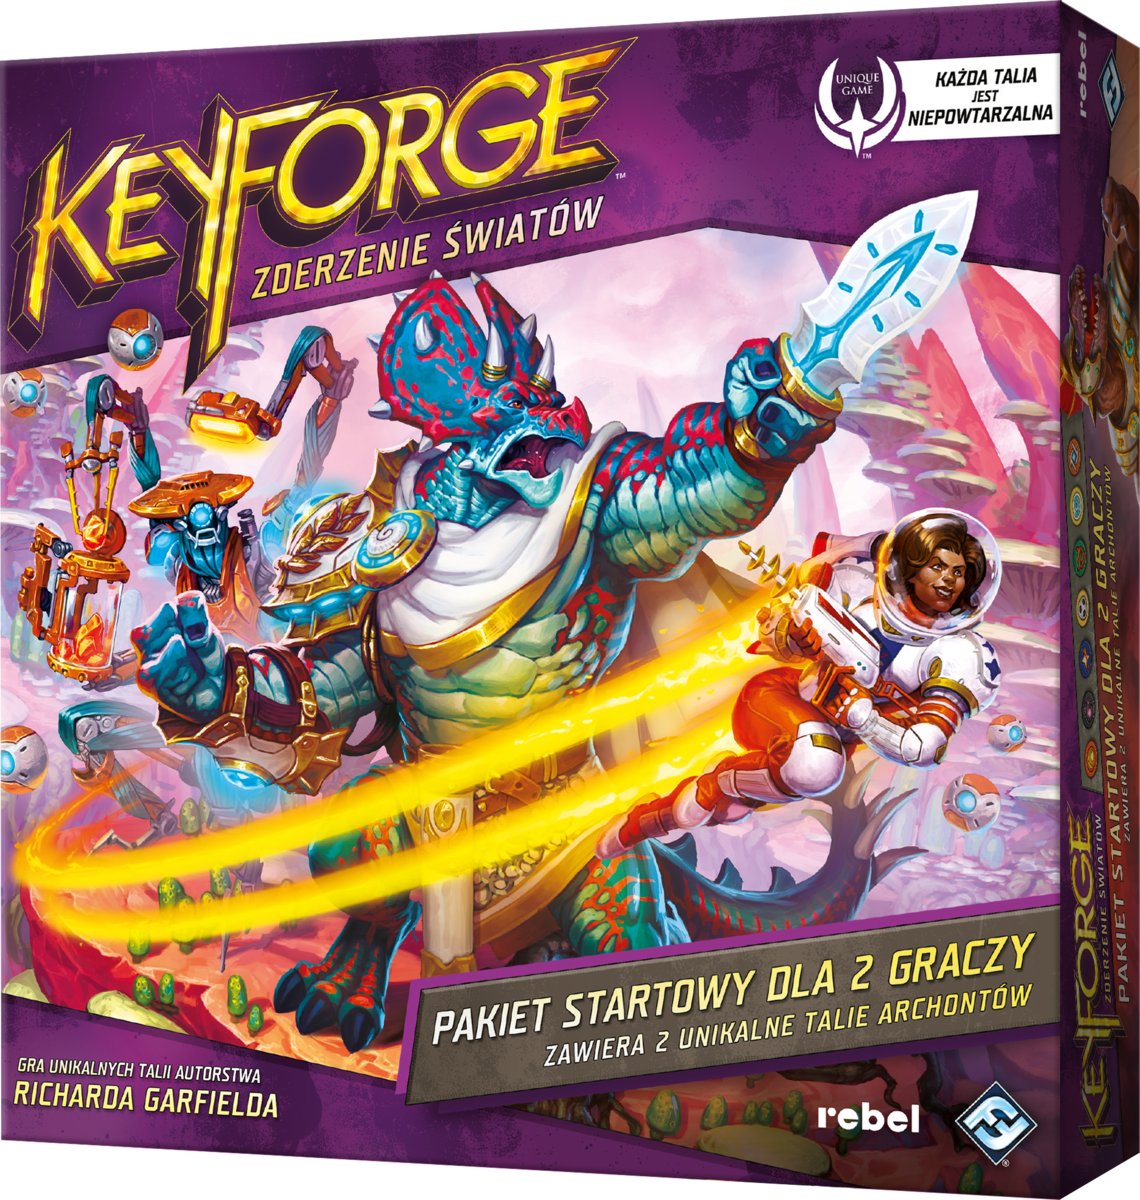 KeyForge Zderzenie Światów Pakiet startowy, gra strategiczna, Rebel